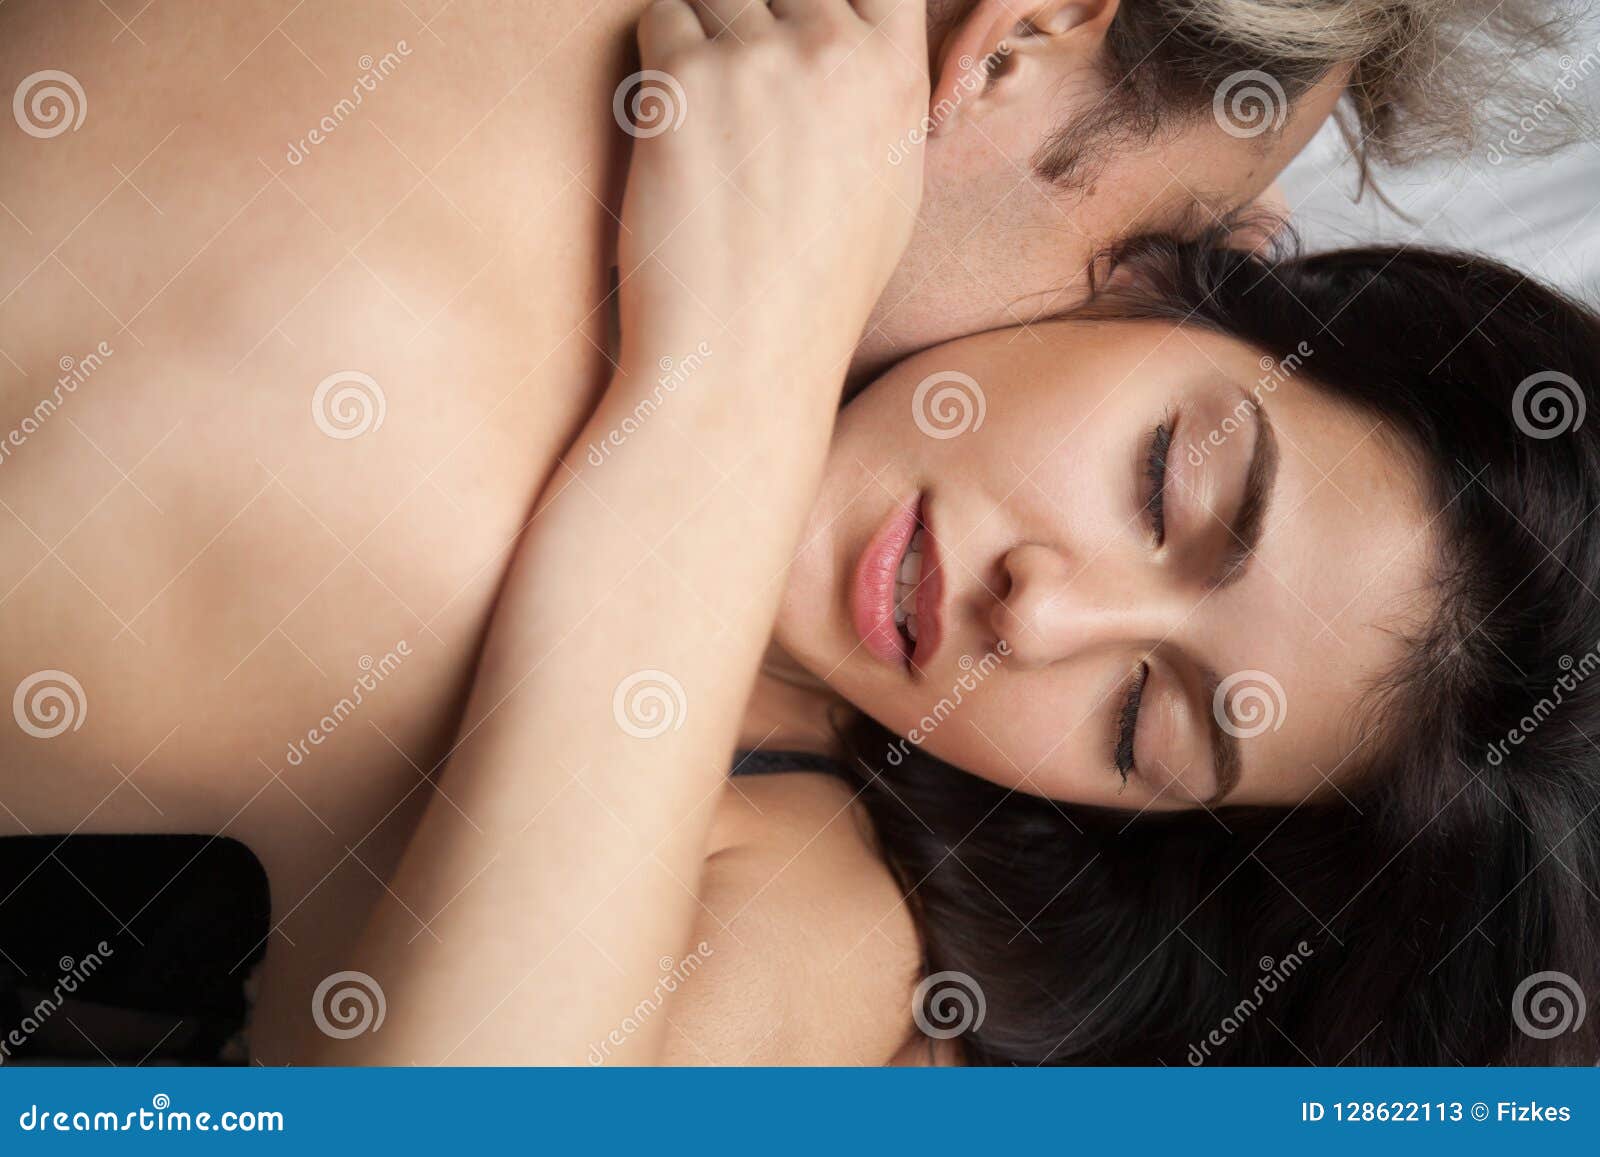 Rough Passion Sex Love | BDSM Fetish